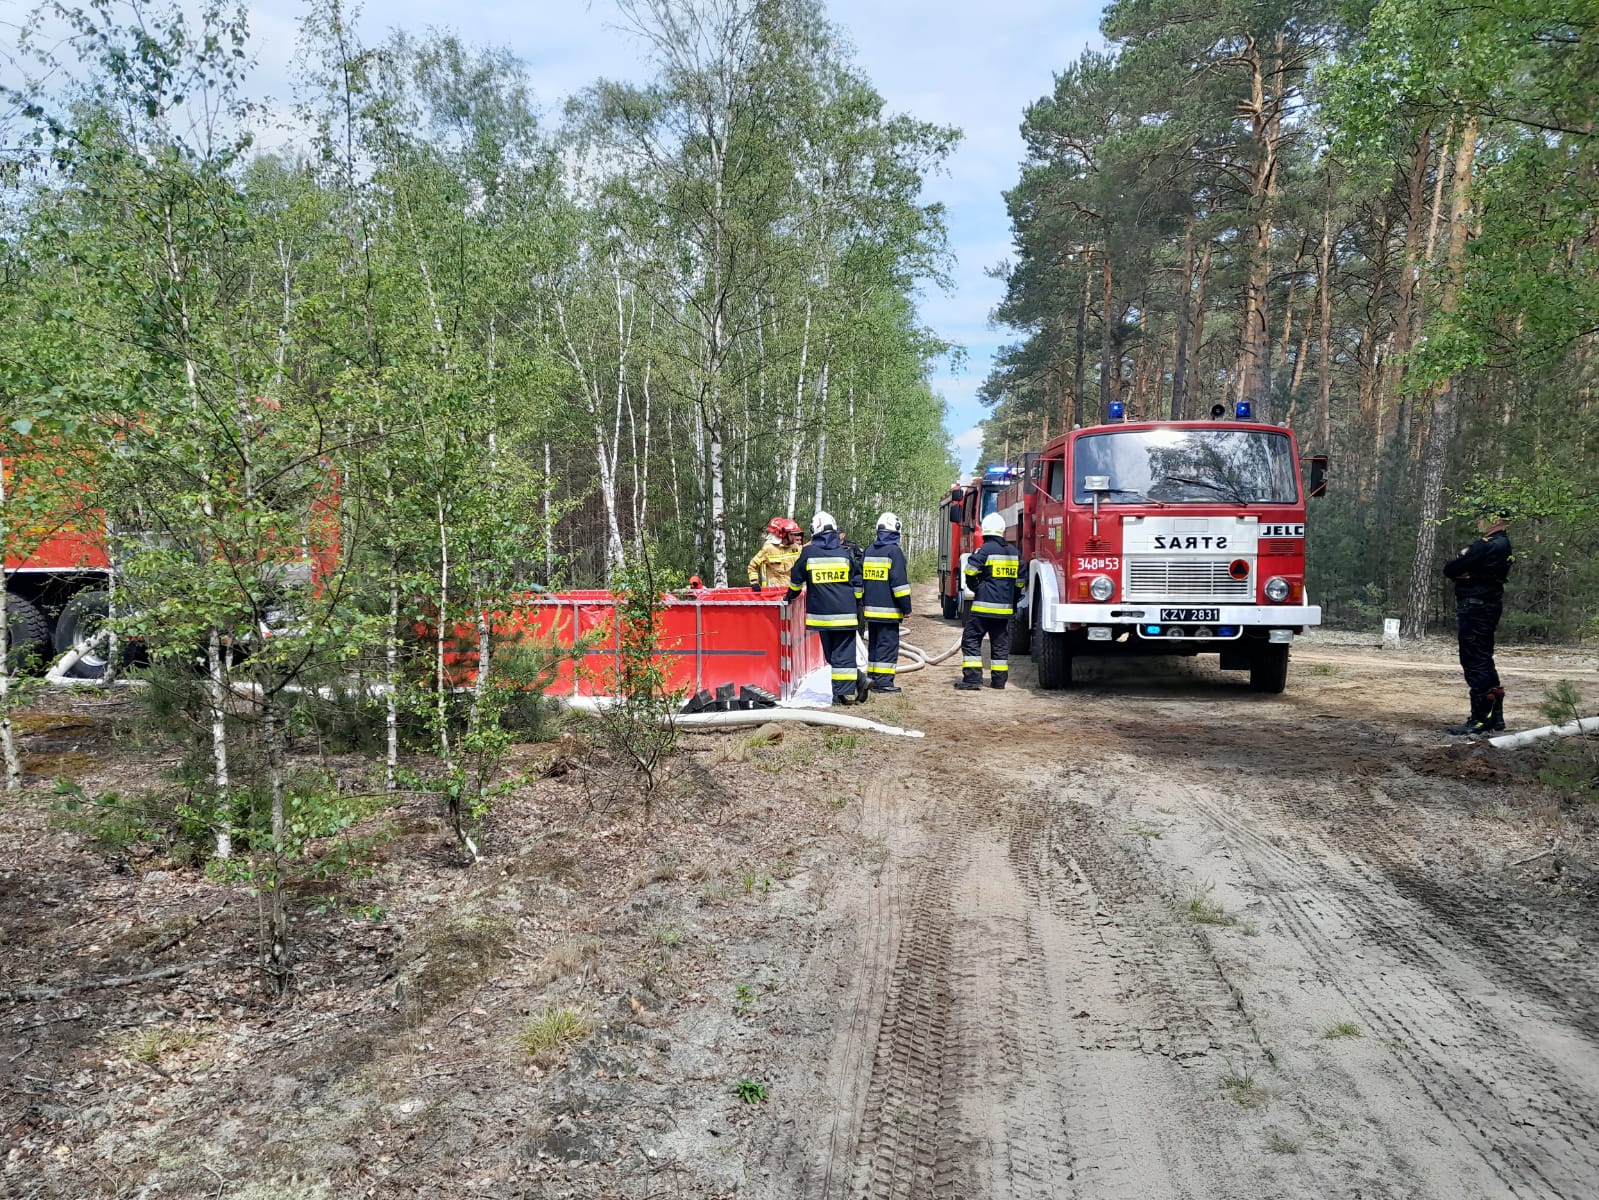 Samochód strażacki po prawo, po lewo zbiornik strażacki na wodę w tle las